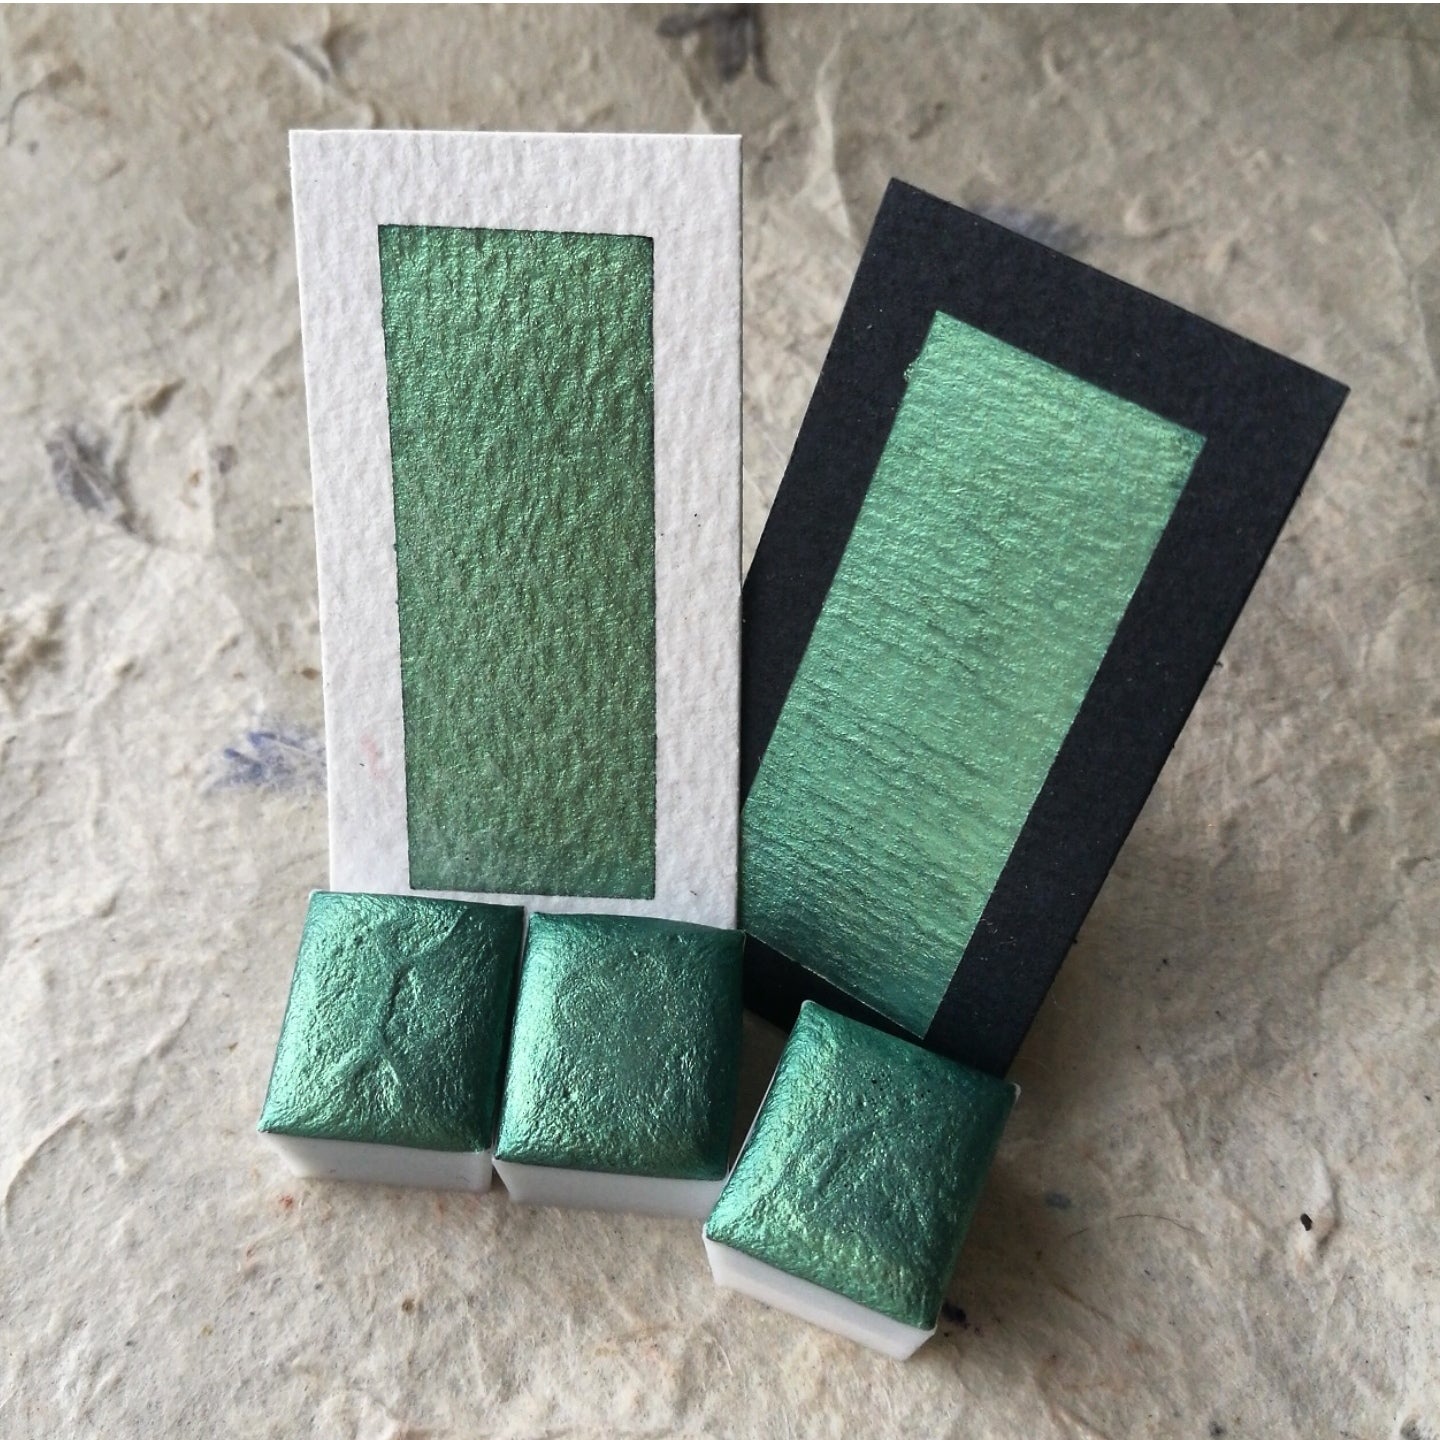 Discontinued - "Emerald" - Emerald Green Shimmer - Individual Half Pan